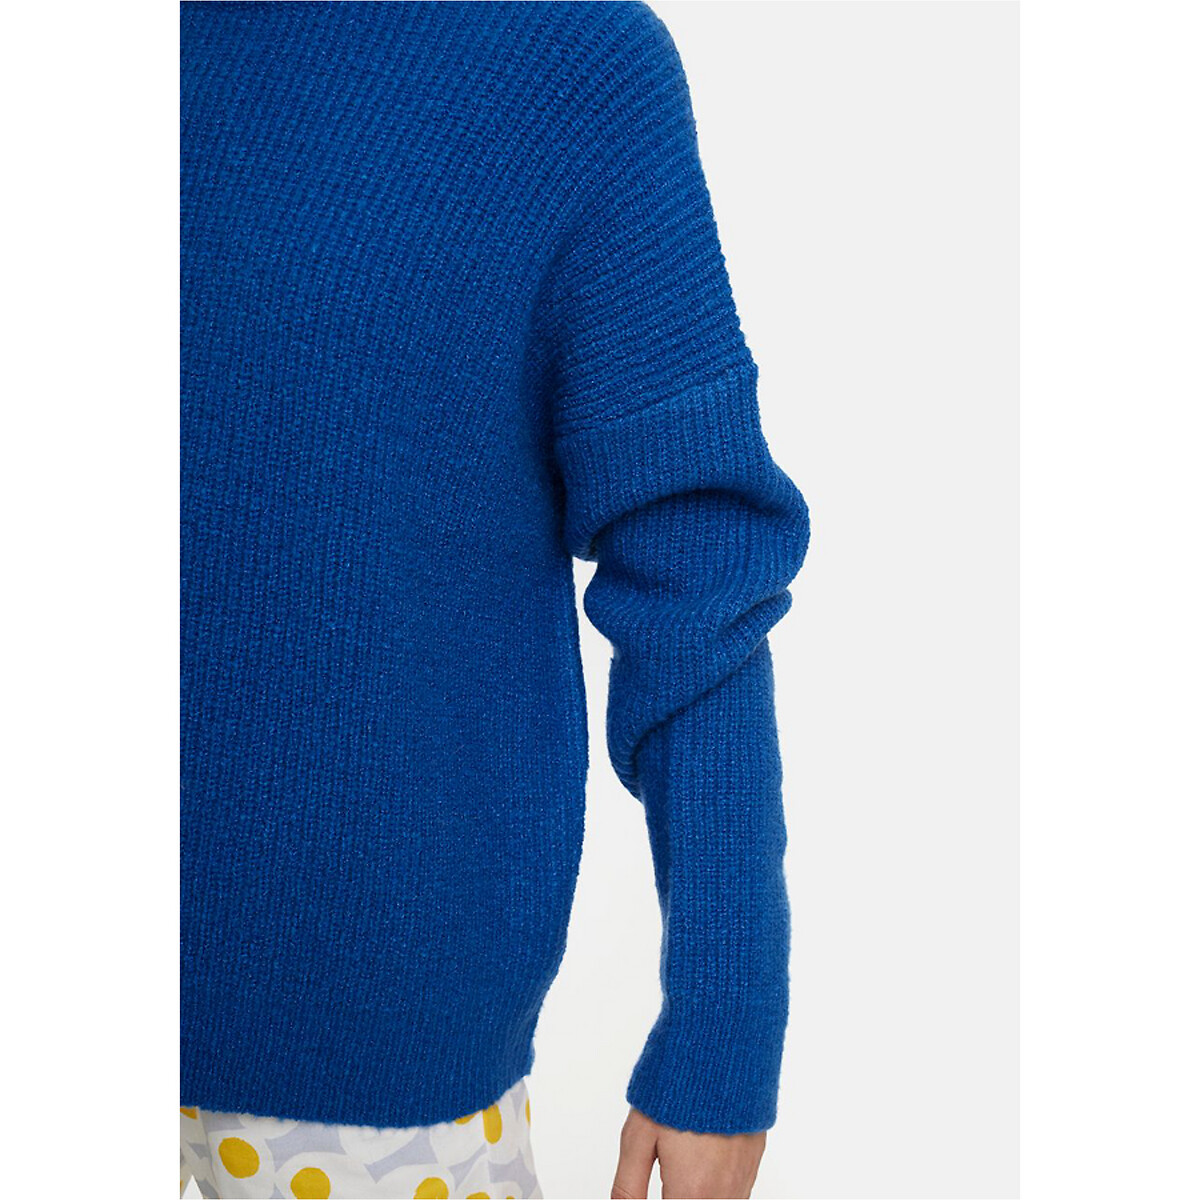 Пуловер La Redoute С круглым вырезом широкого покроя M синий, размер M - фото 5